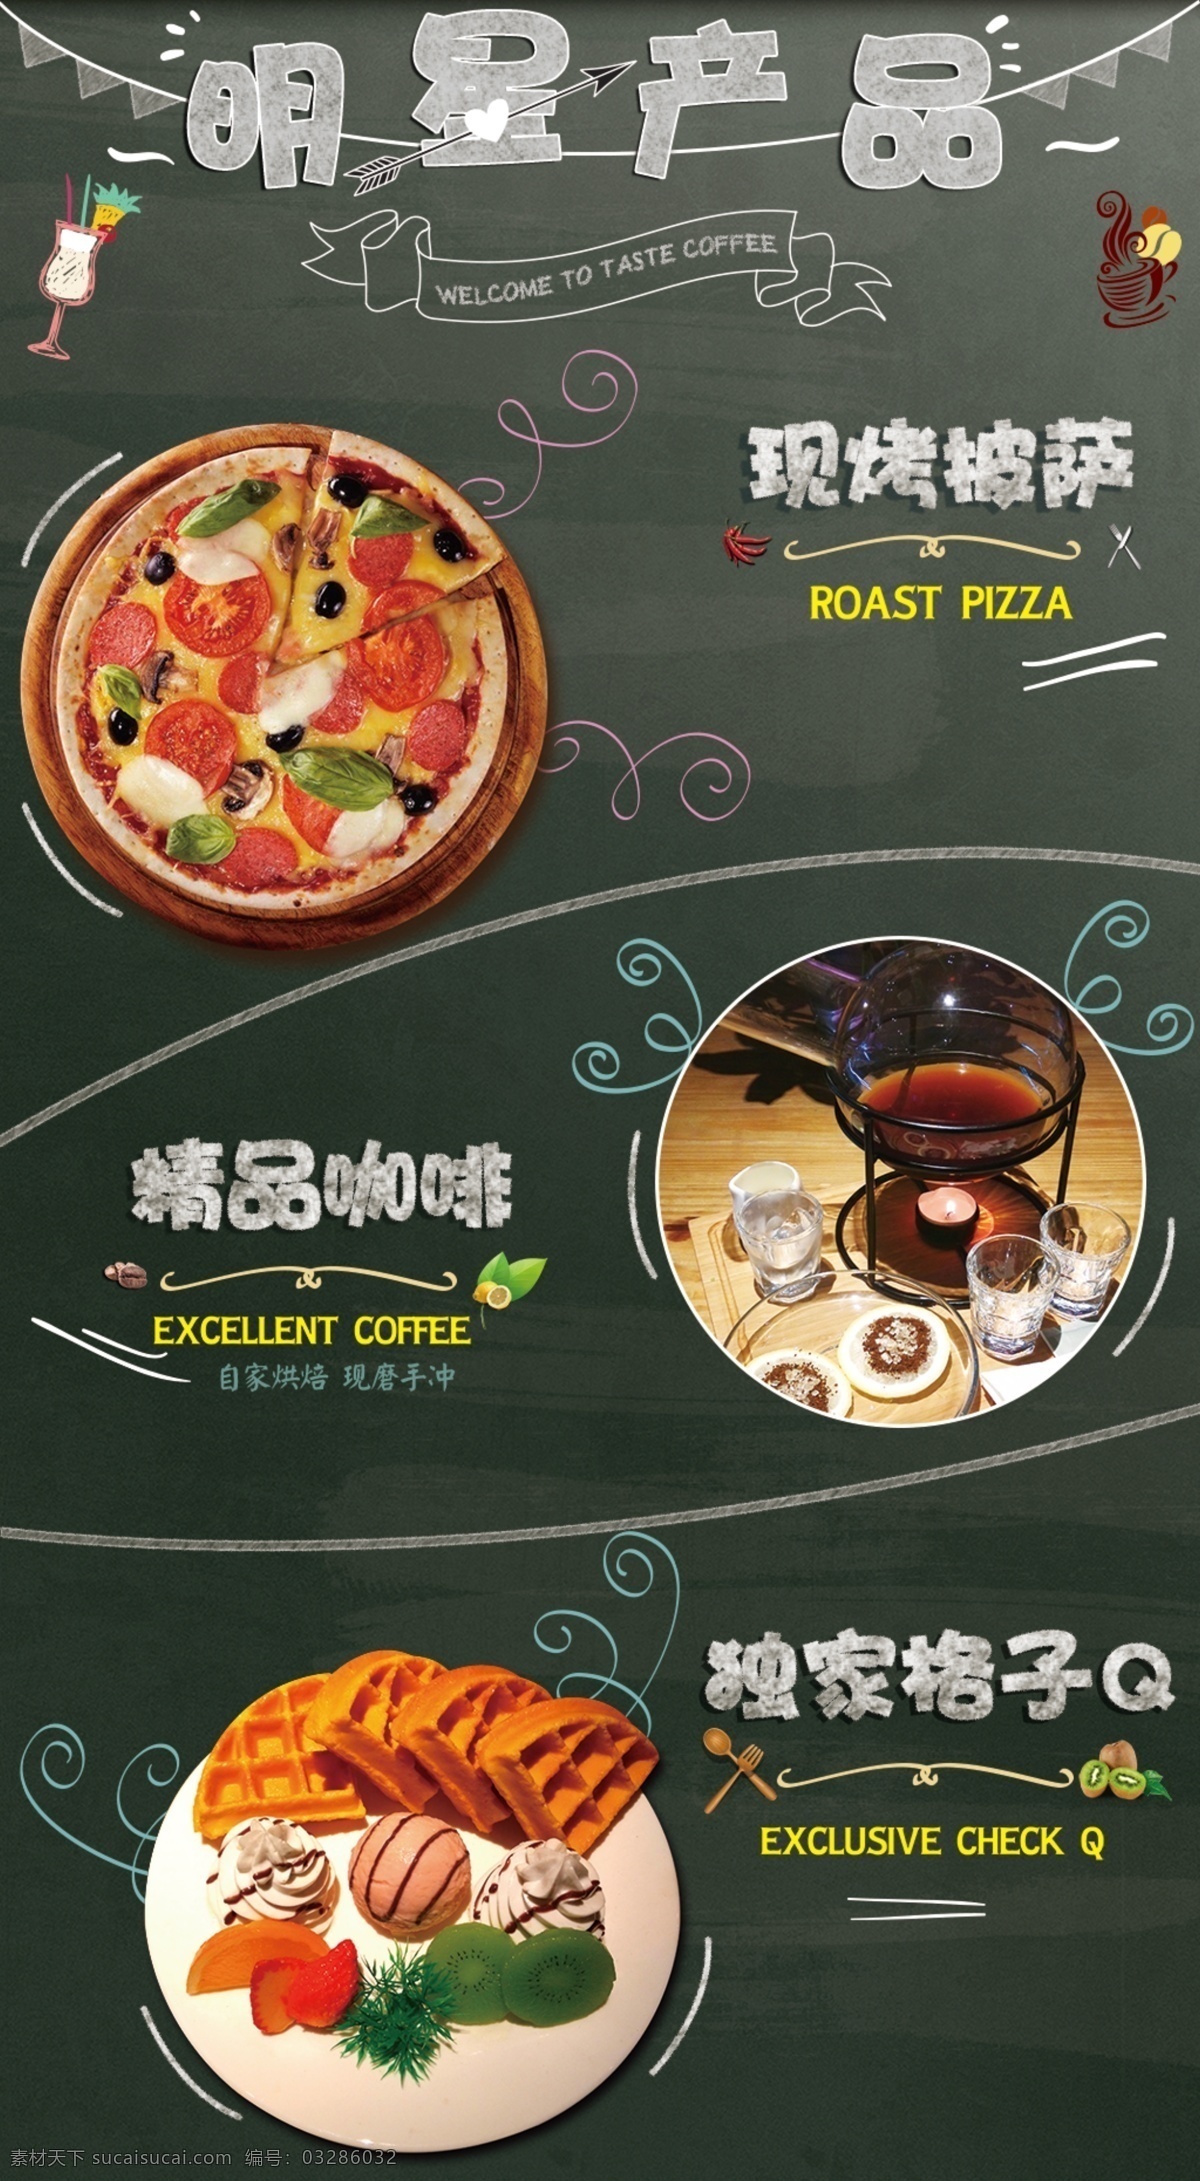 现烤披萨 披萨 韩式披萨 披萨灯箱片 饼 披萨海报 披萨广告 披萨展板 披萨宣传 披萨单页